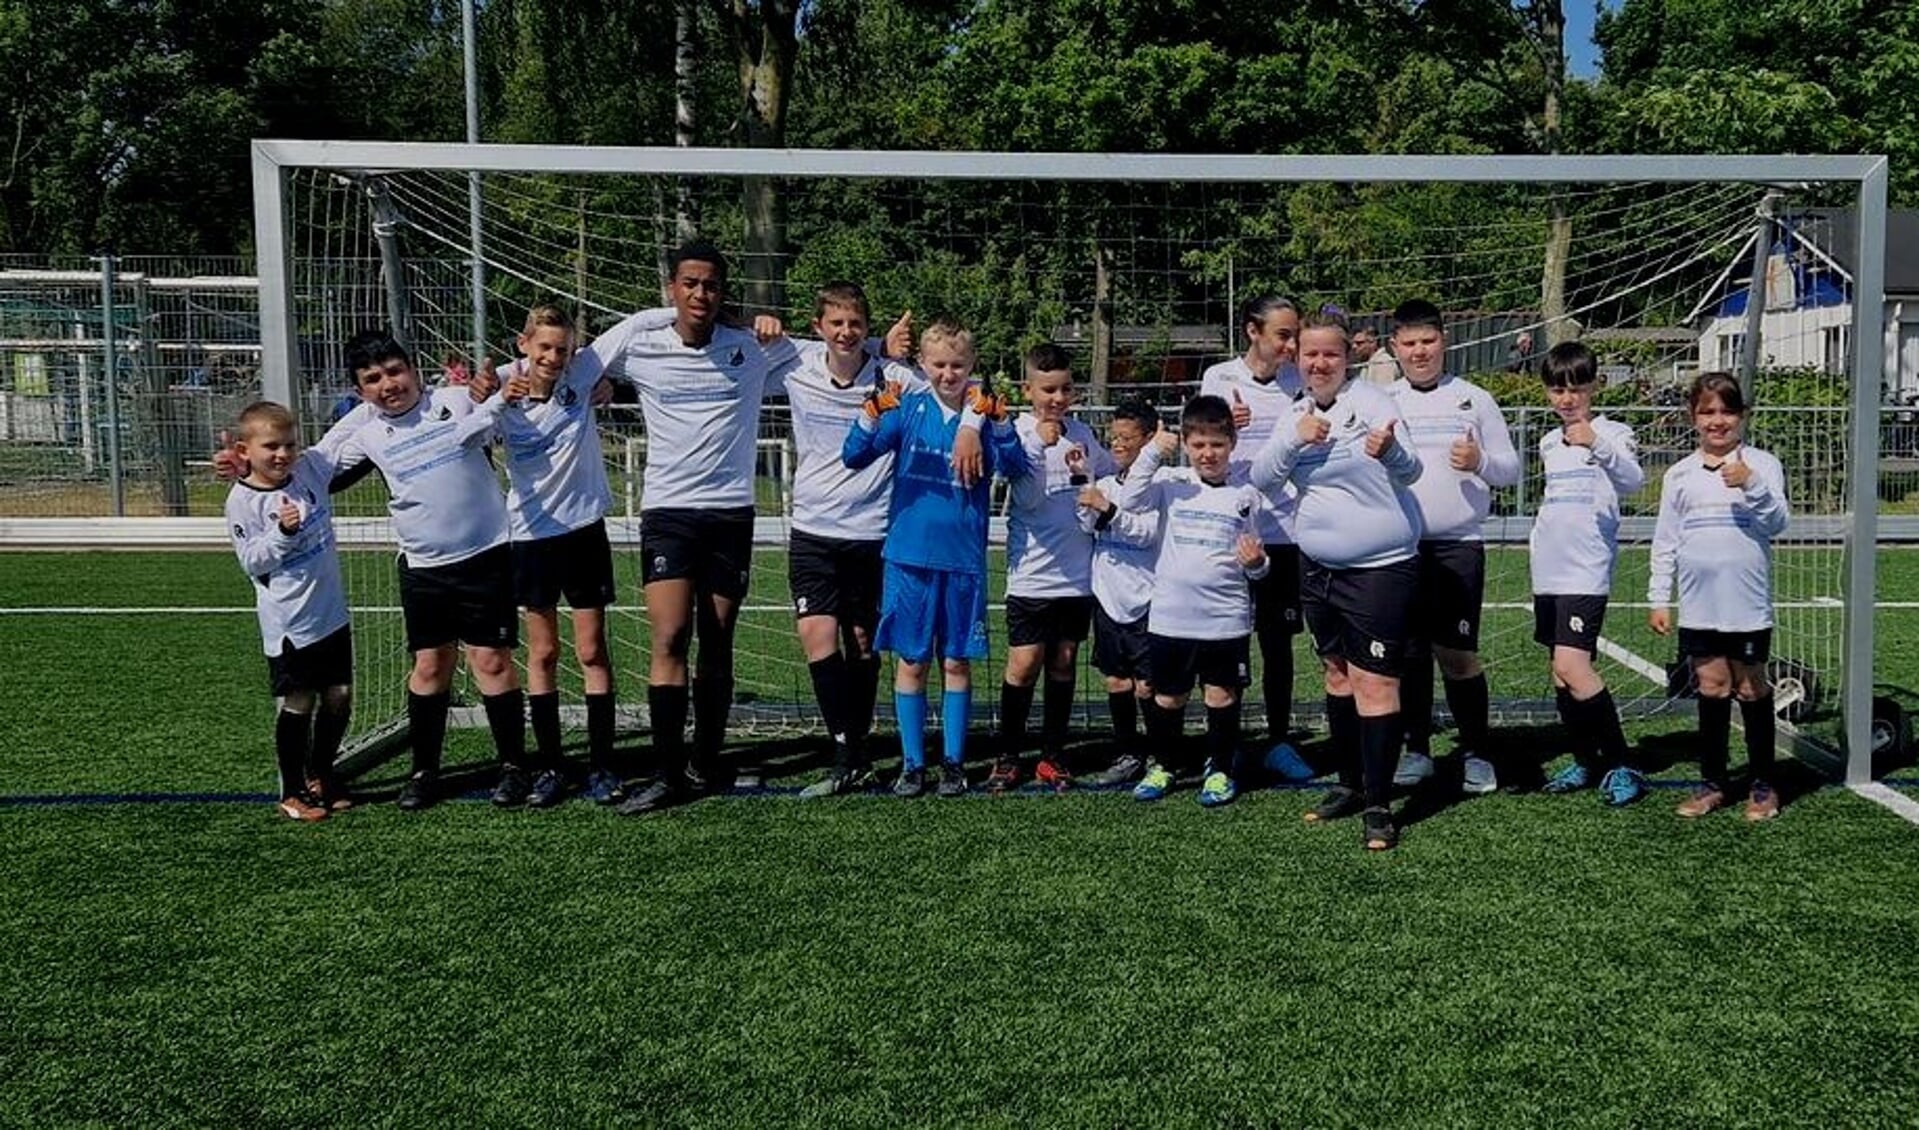 De jongens en meisjes van DVO'32 speelden in Schiedam bij PPSC hun eerste wedstrijd.  "Ze hebben genoten en gewonnen", zag de teamleiding. (Foto: PR)